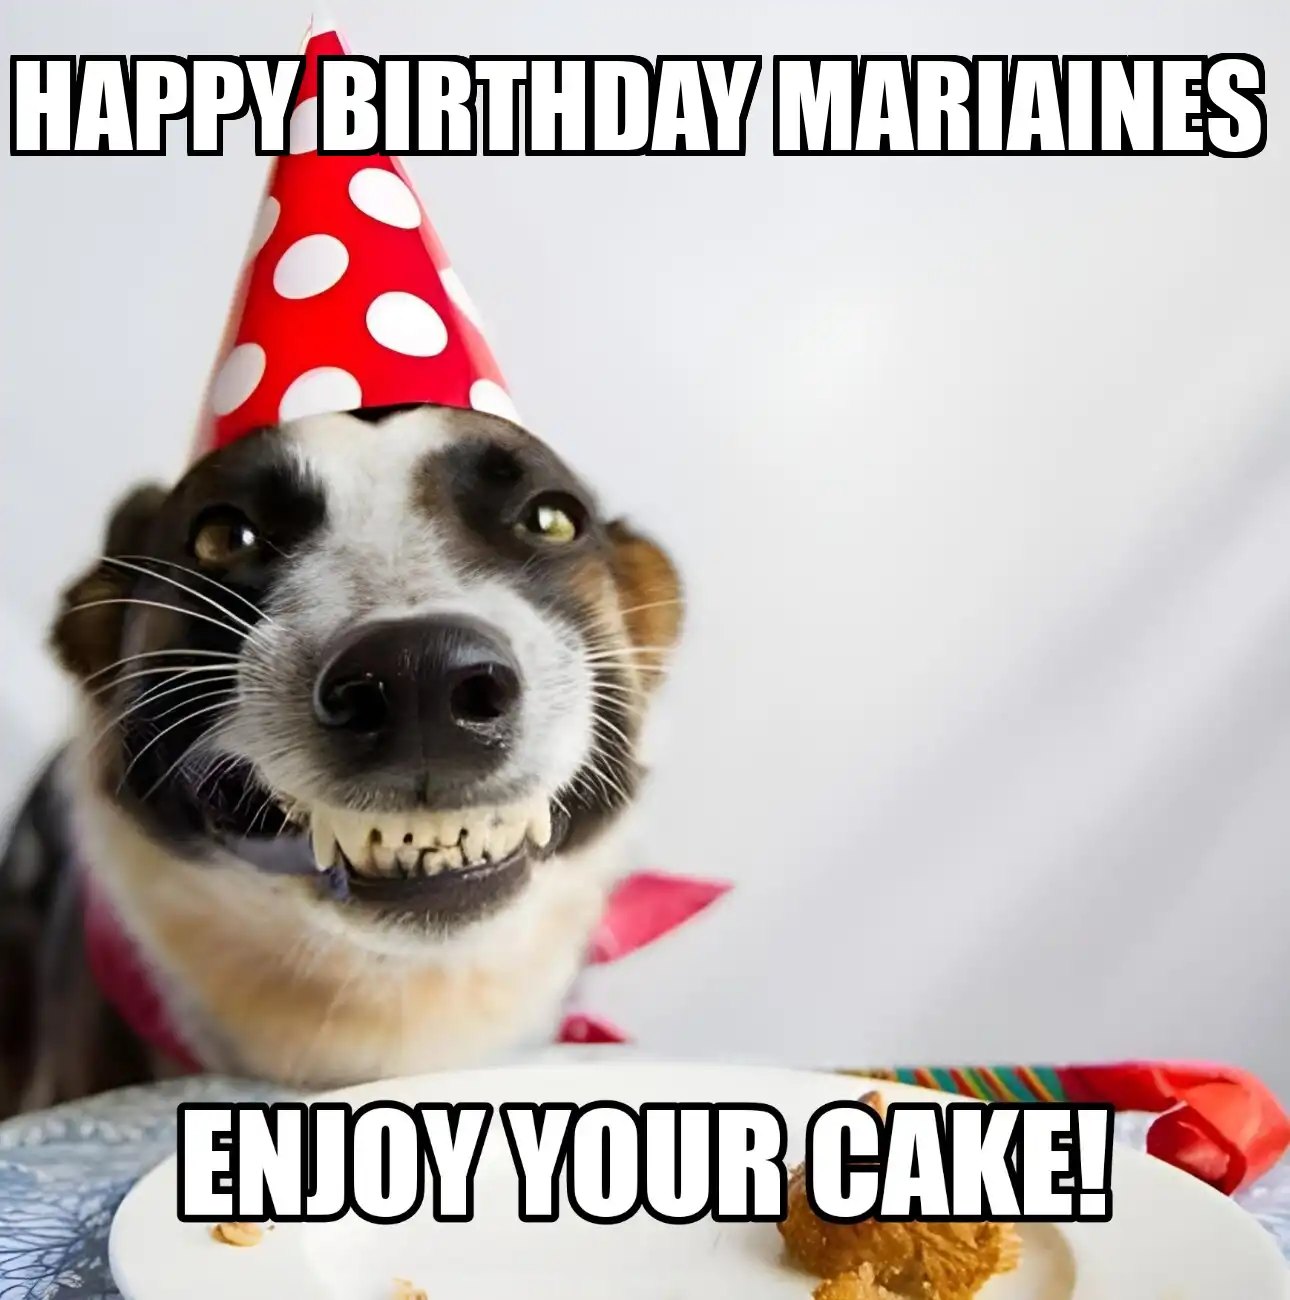 Happy Birthday Mariaines Enjoy Your Cake Dog Meme